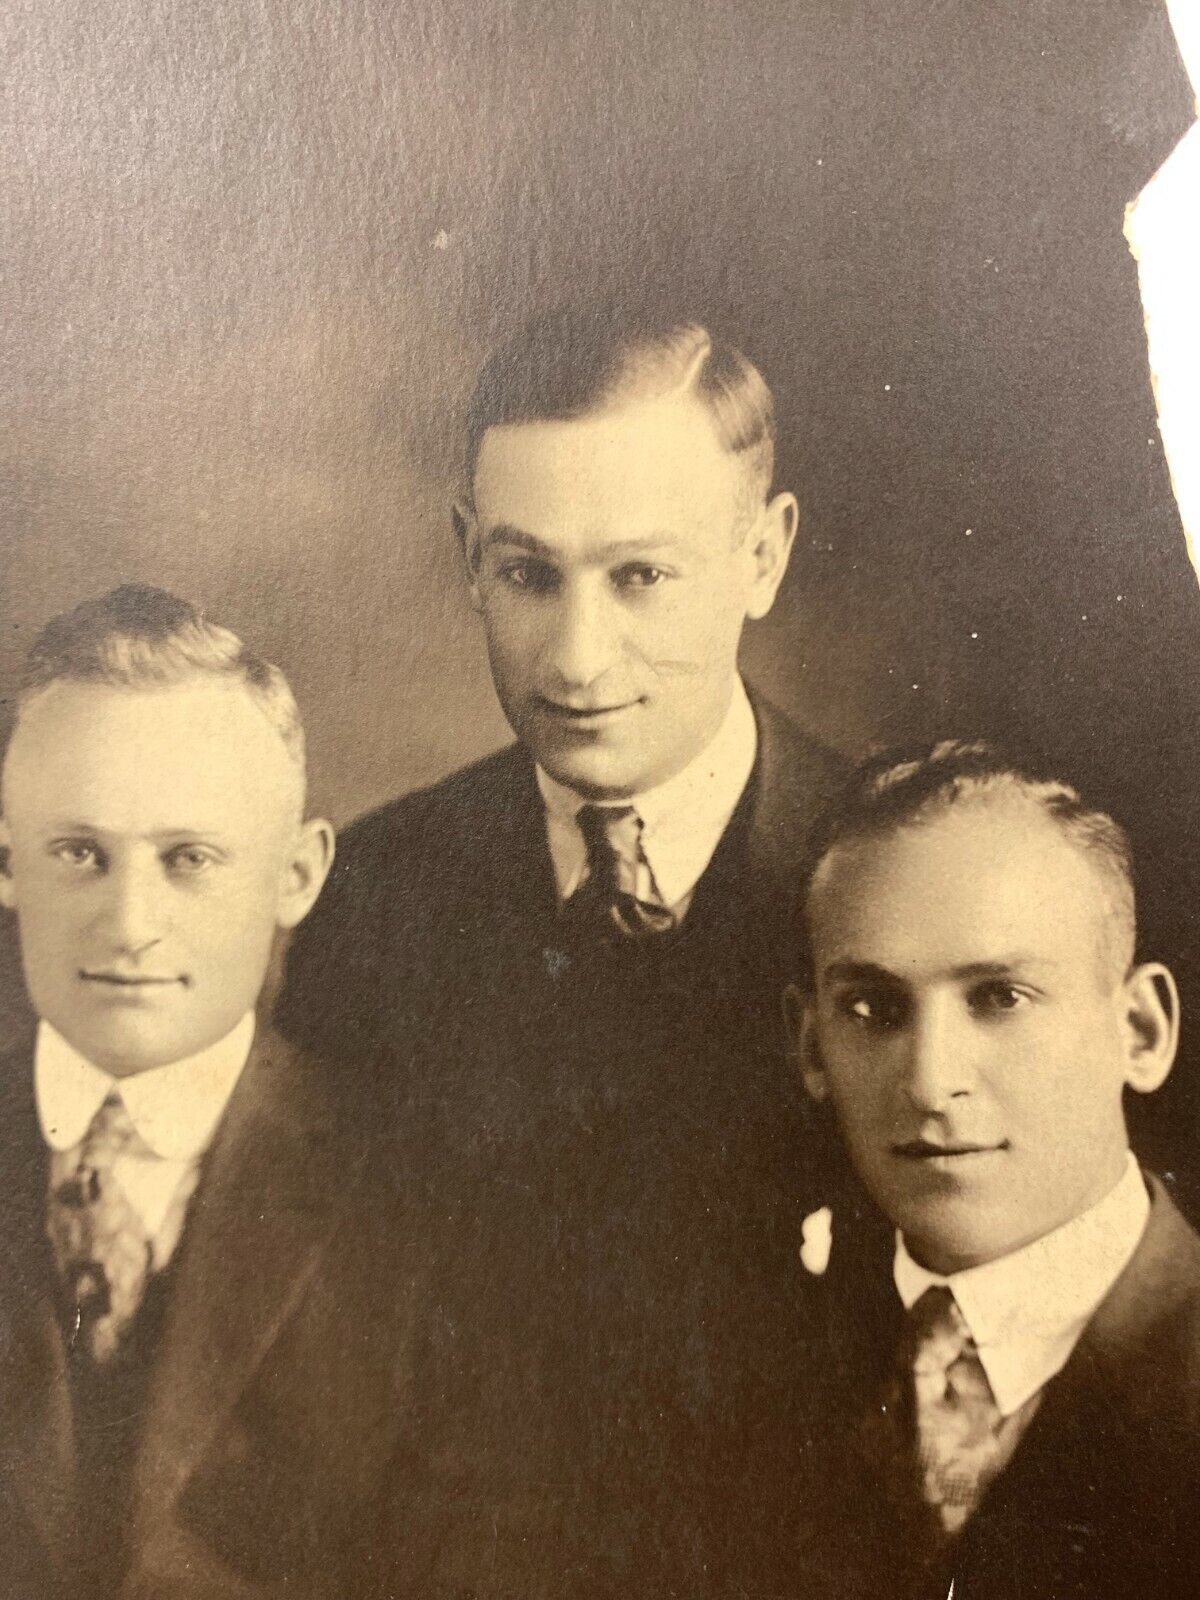 Bm) Found Photograph 1900-1920 Three Handsome Men Group Portrait 3 Suits